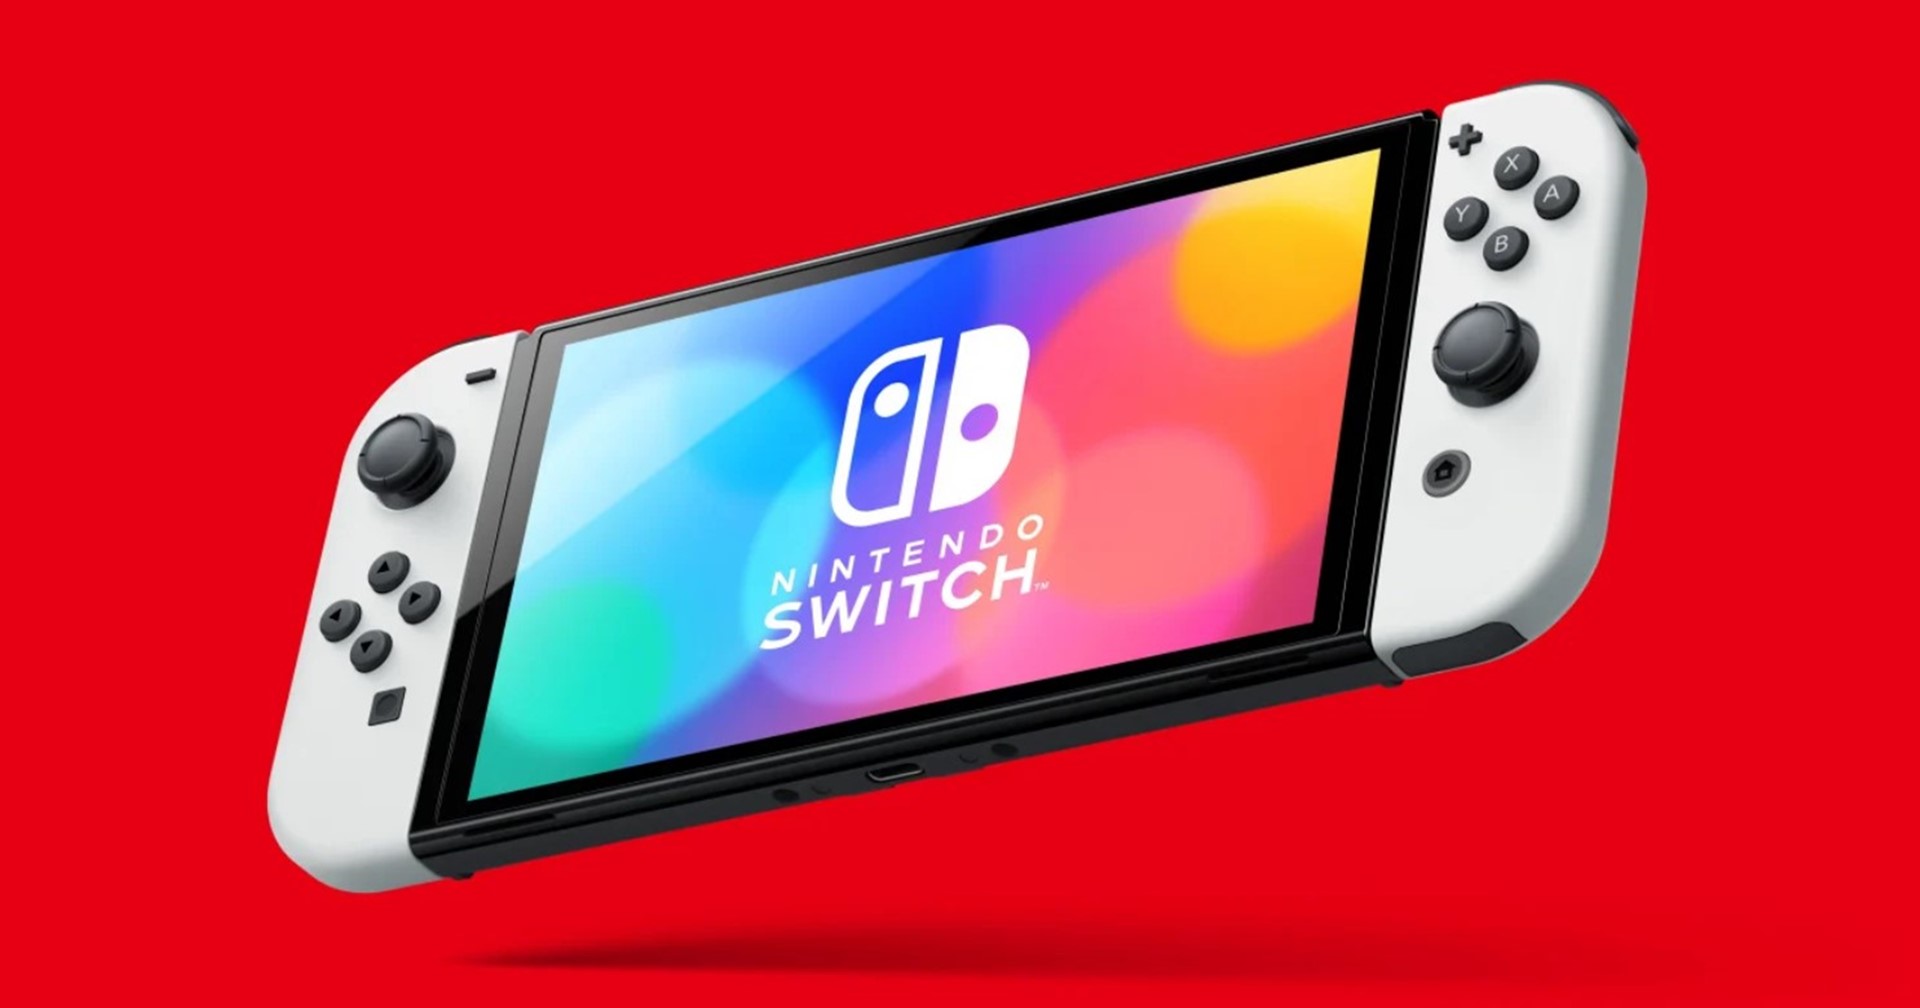 ยังไม่มีรุ่นใหม่ ? ปู่นินสั่งเพิ่มกำลังผลิต Nintendo Switch